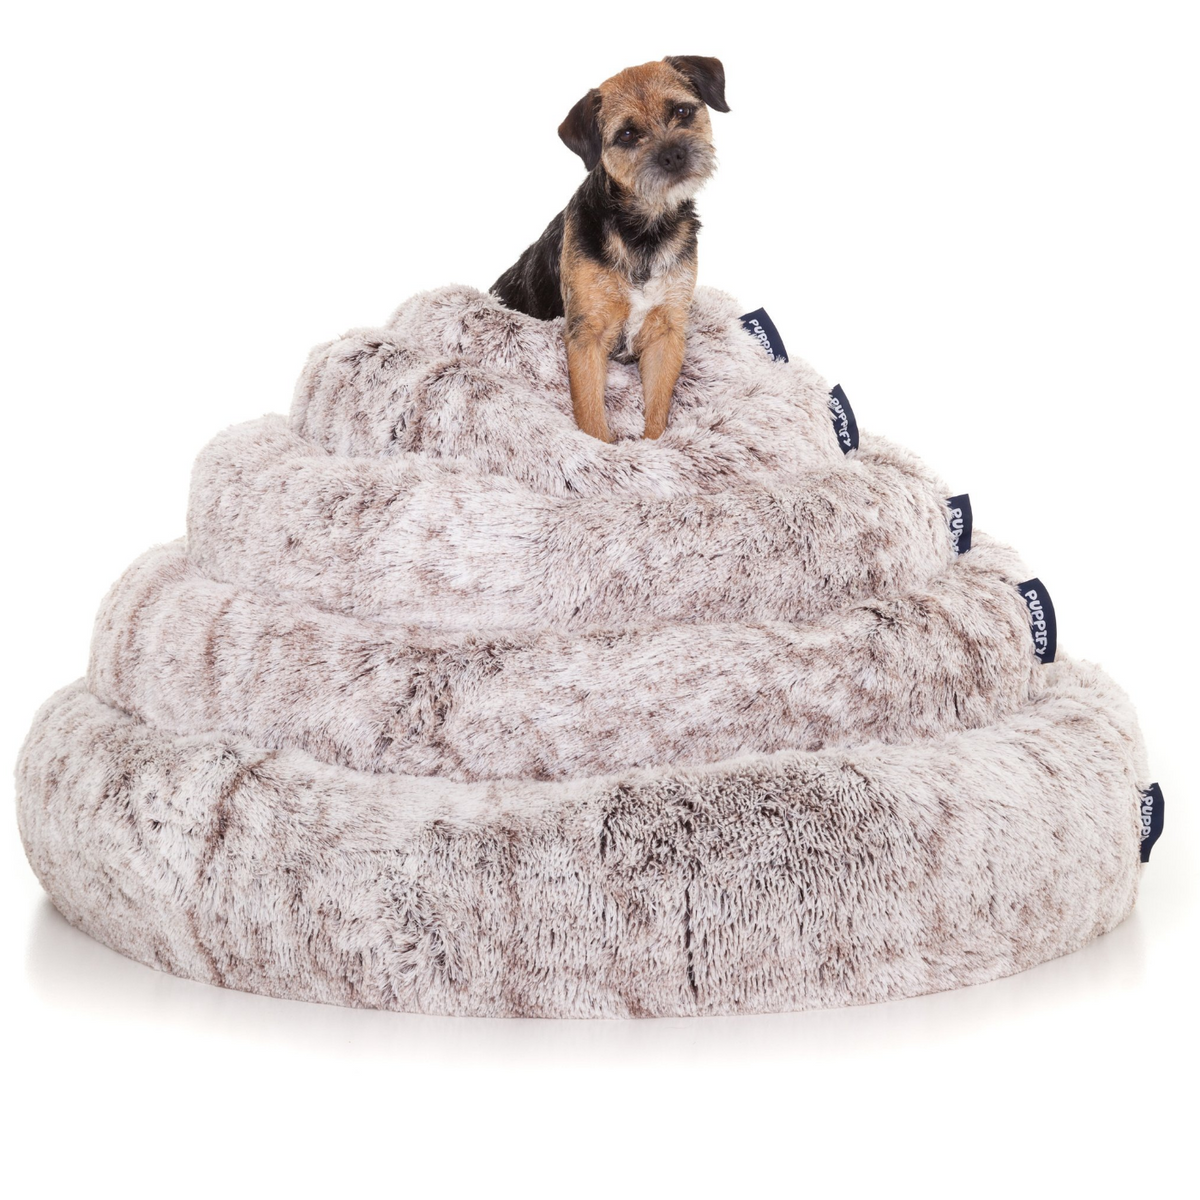 Innovatief ontwerp van Puppify&#39;s fluffy hondenmand voor de ideale slaaphouding.